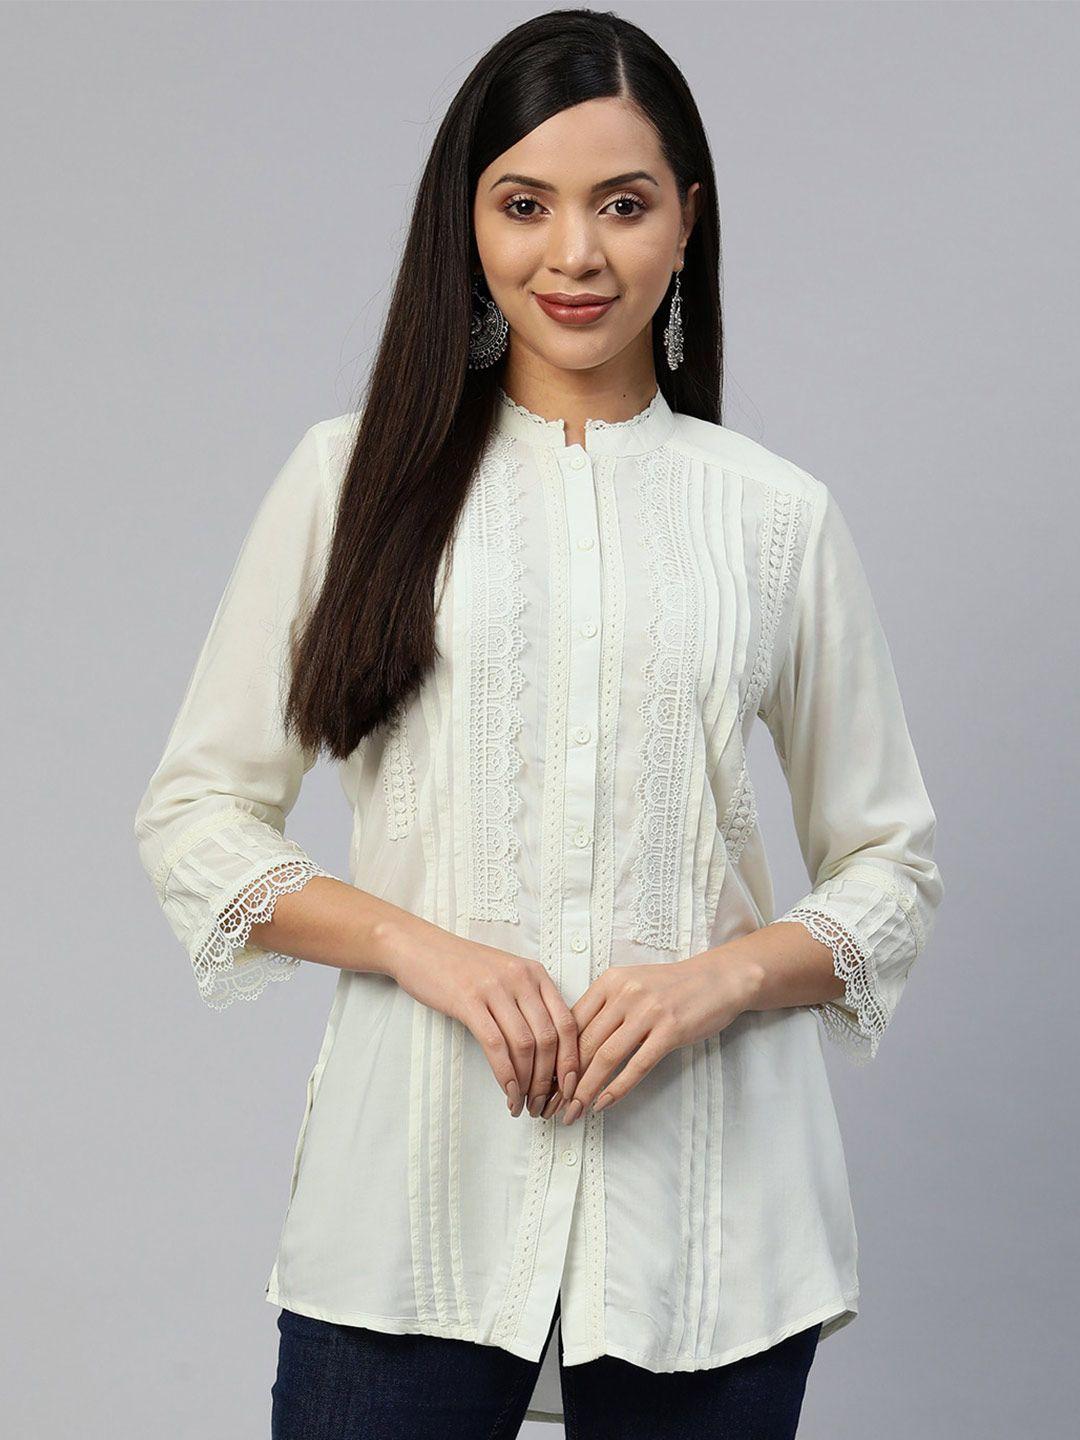 nayam-by-lakshita-comfort-mandarin-collar-lace-up-casual-shirt